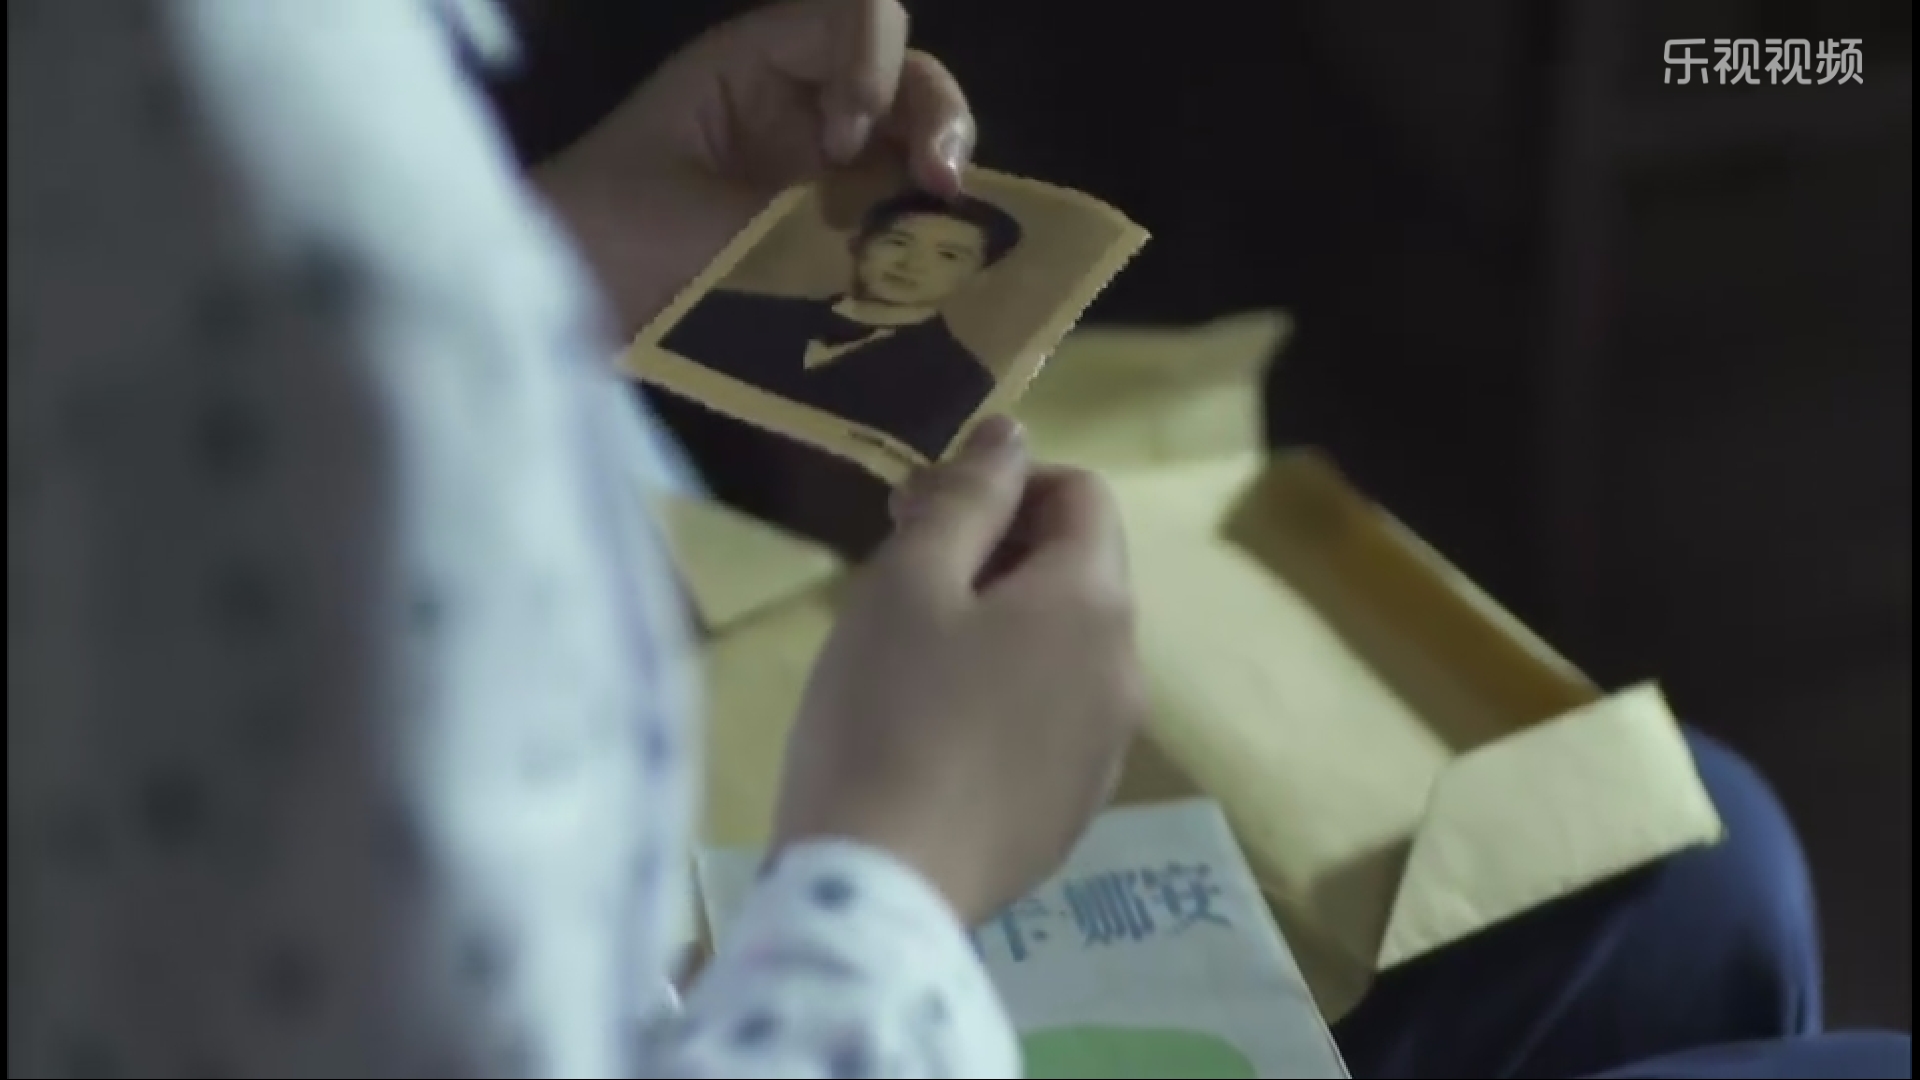 《父母爱情》:亚宁在安杰书皮里发现的那张照片里的男人会是谁?